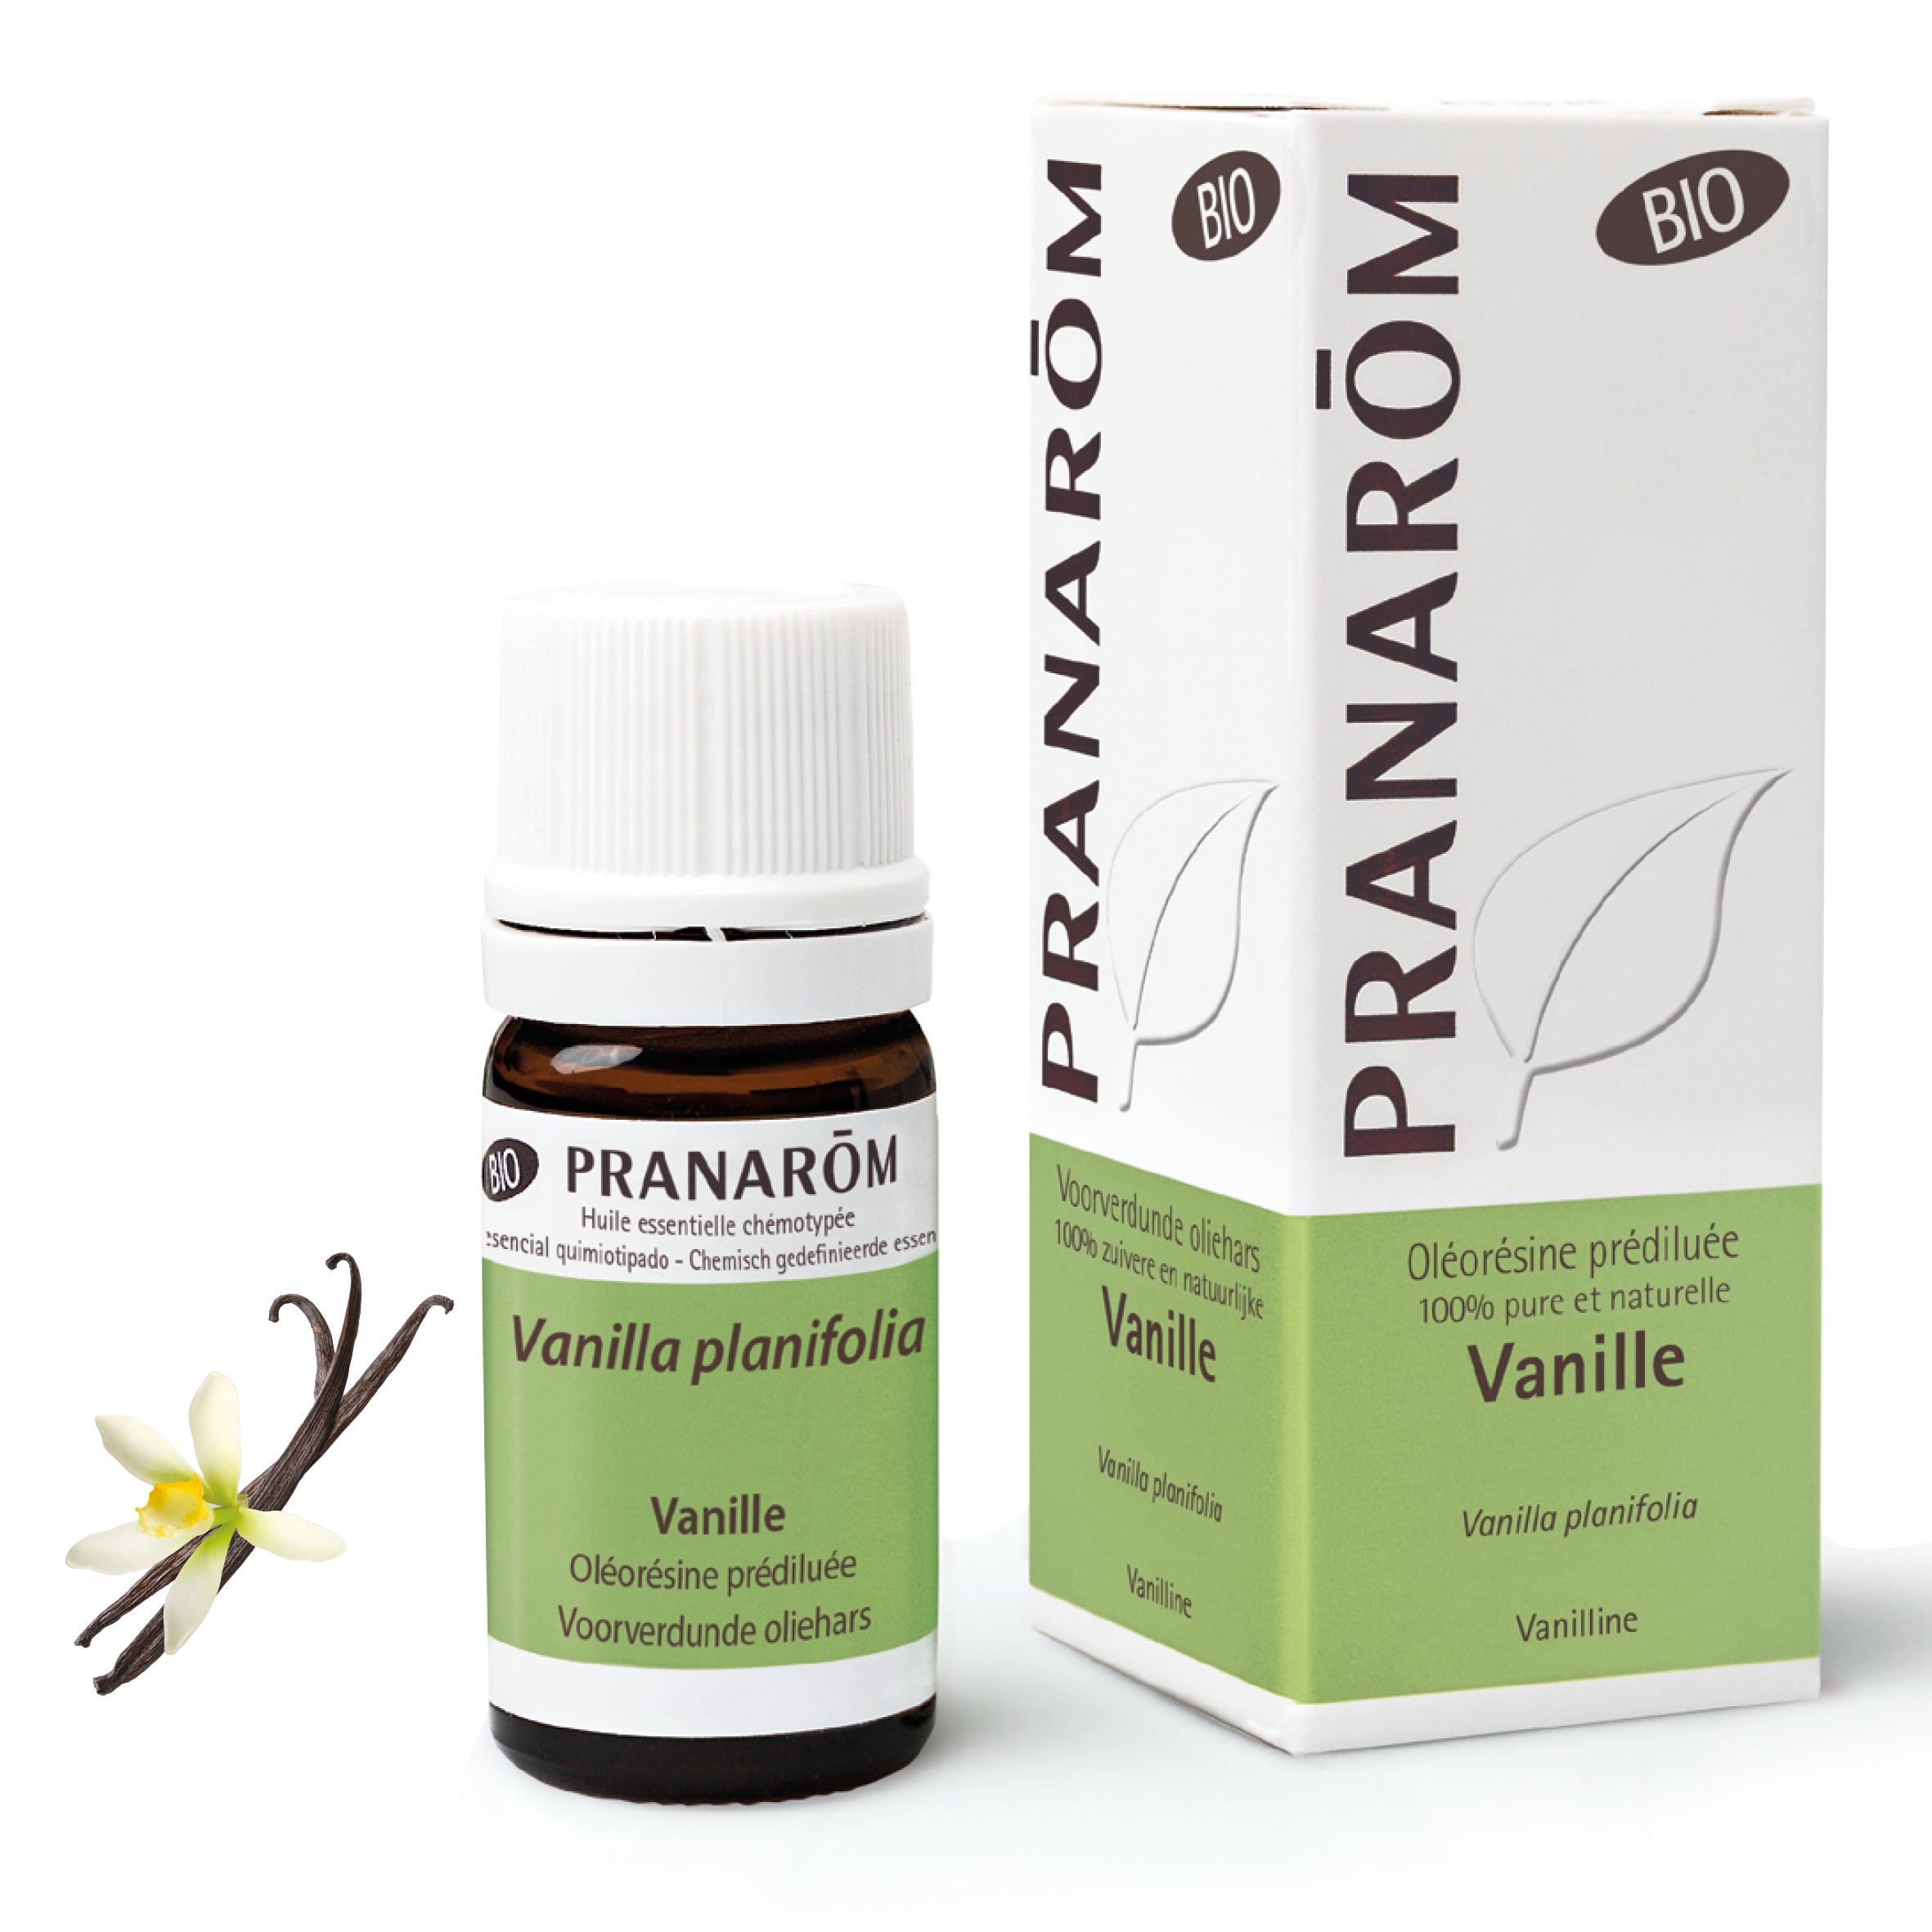 Pranarom oléorésine de vanille bio - Vanilline - Vanilla planifolia